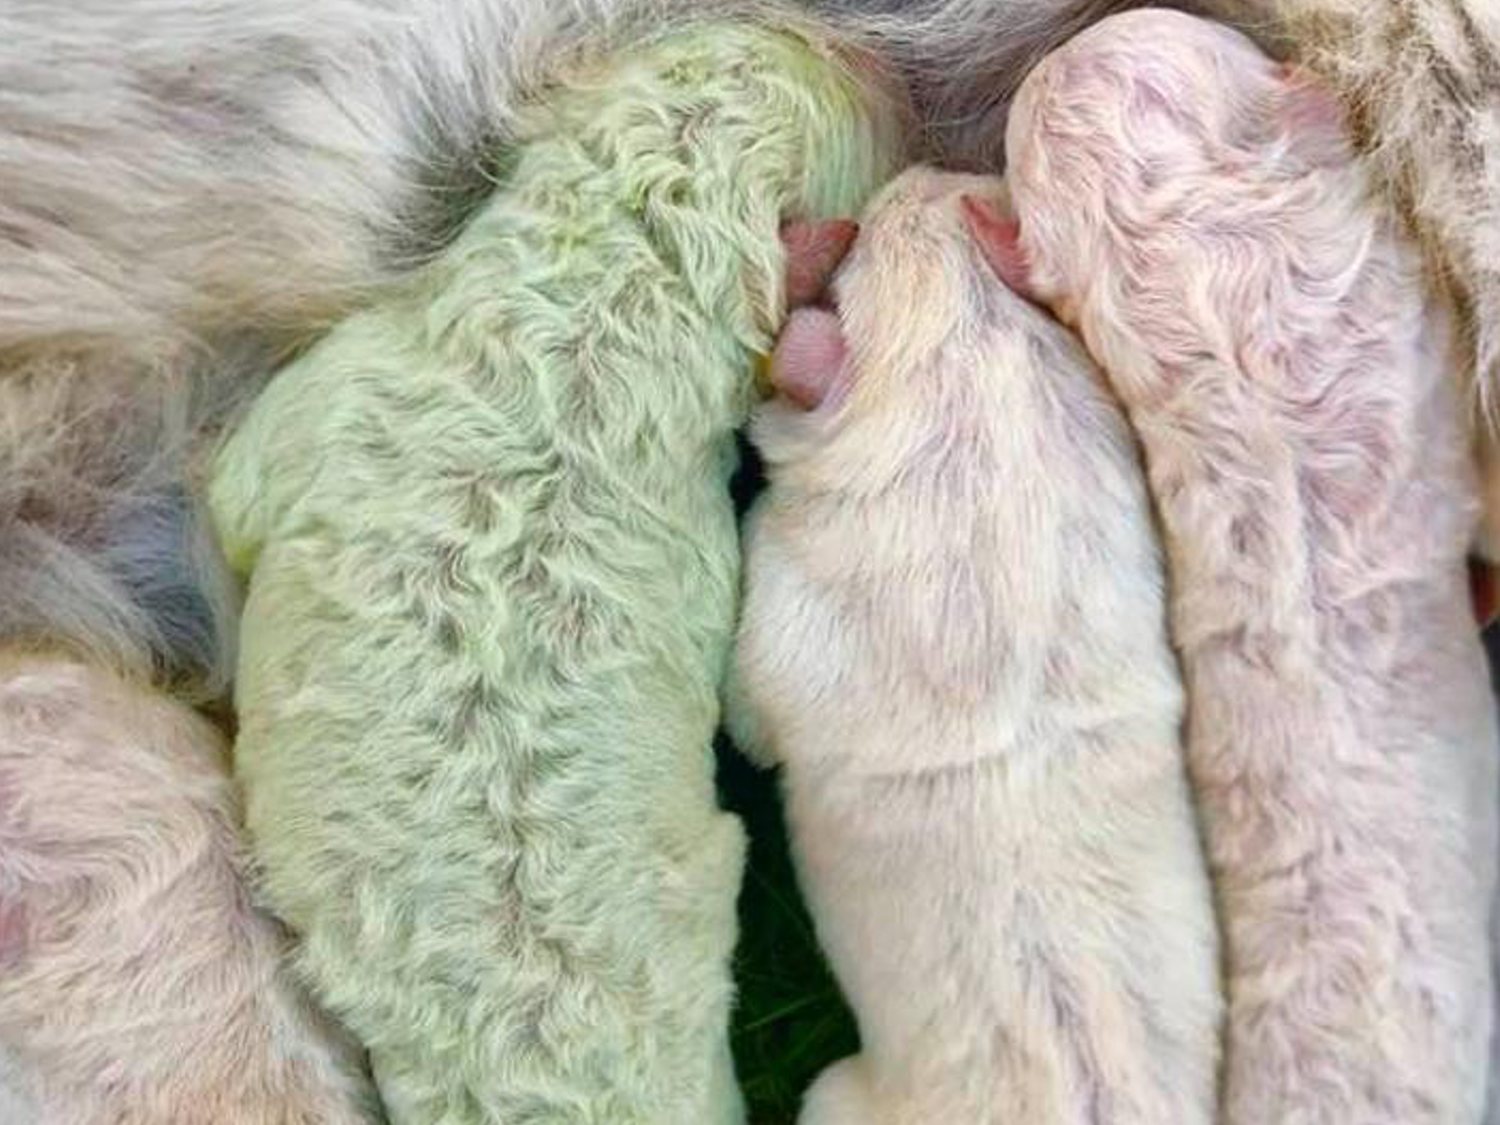 2020 no para: nace un perro con el pelo verde en Italia